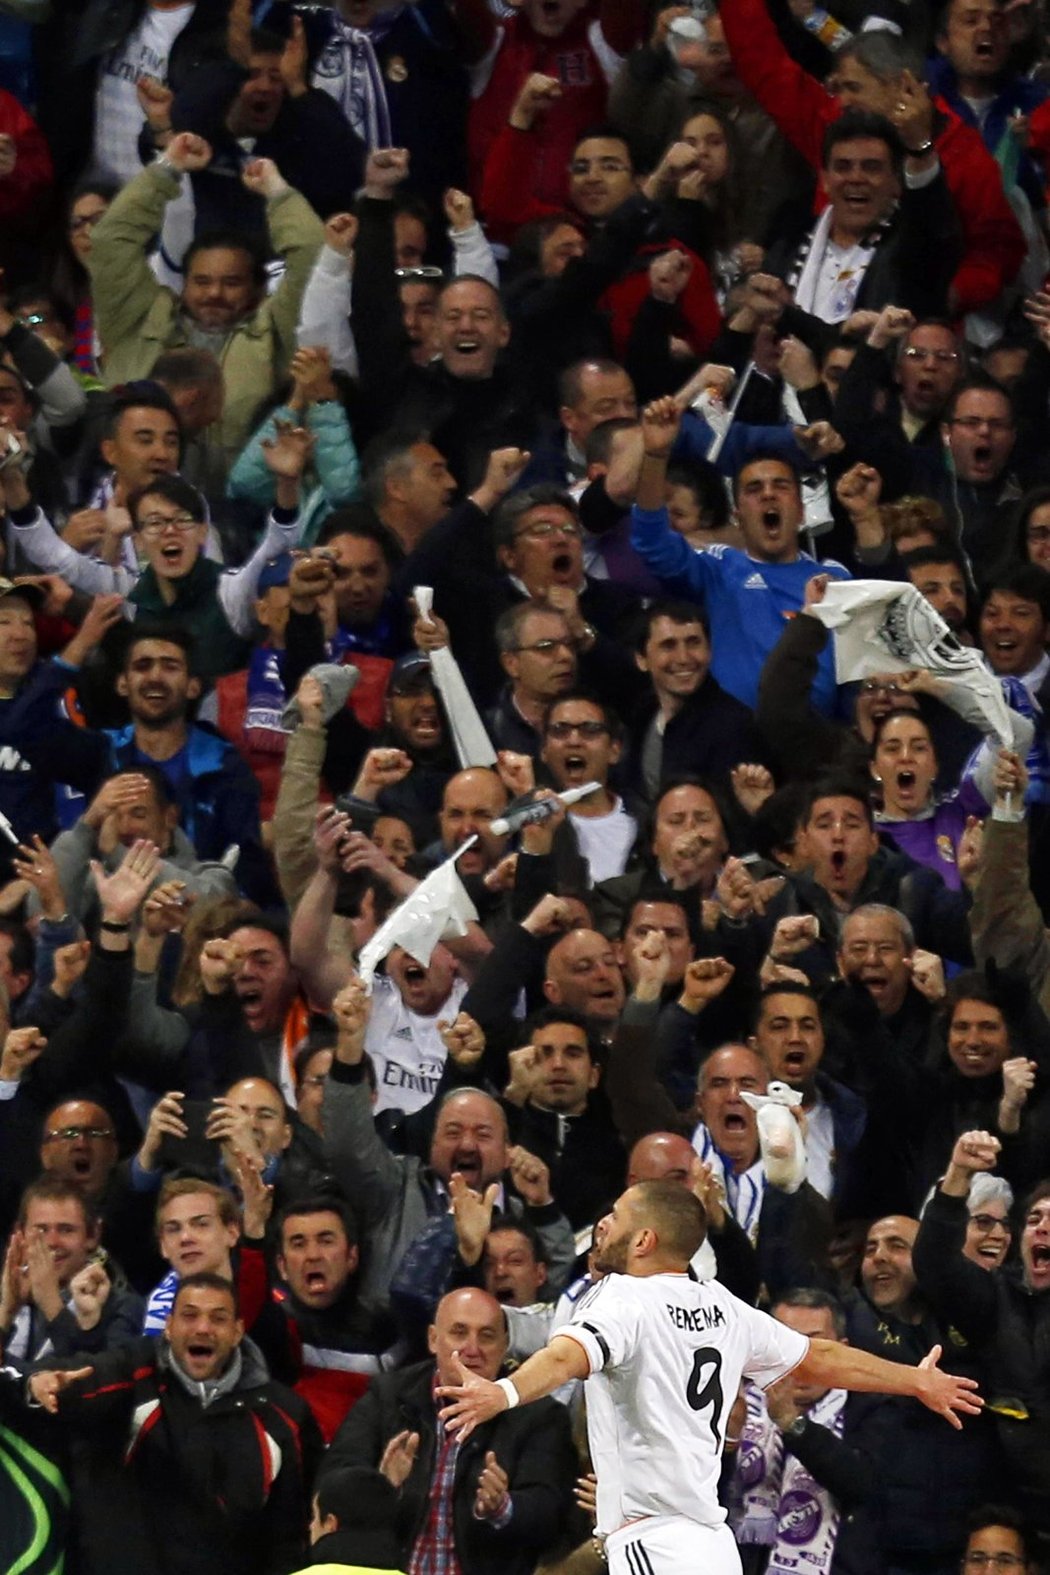 Fanoušci Realu šílí, Karim Benzema právě zajistil Realu vedení 2:1